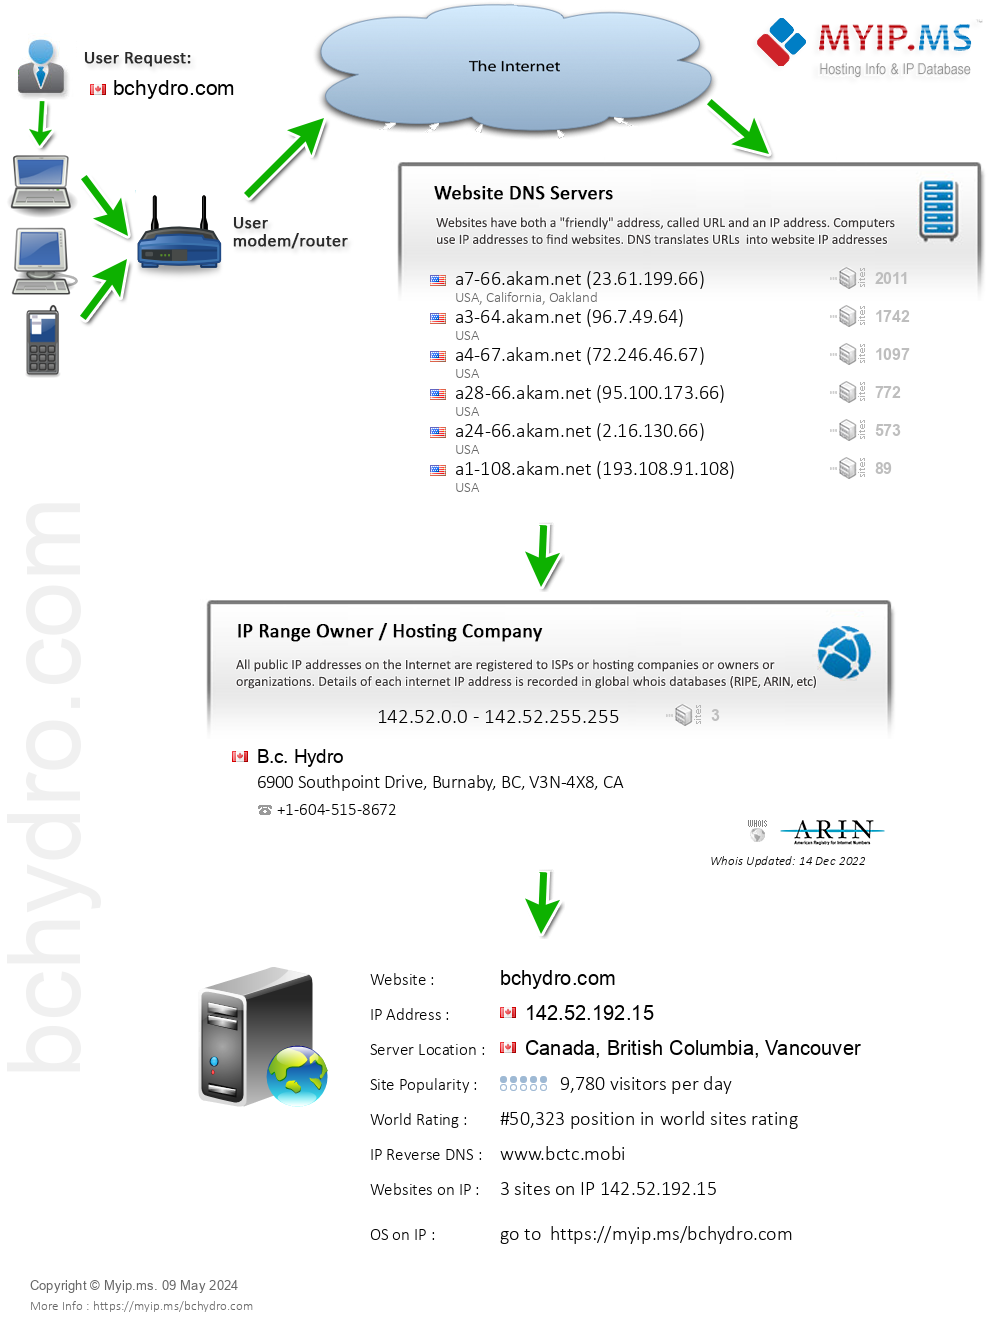 Bchydro.com - Website Hosting Visual IP Diagram